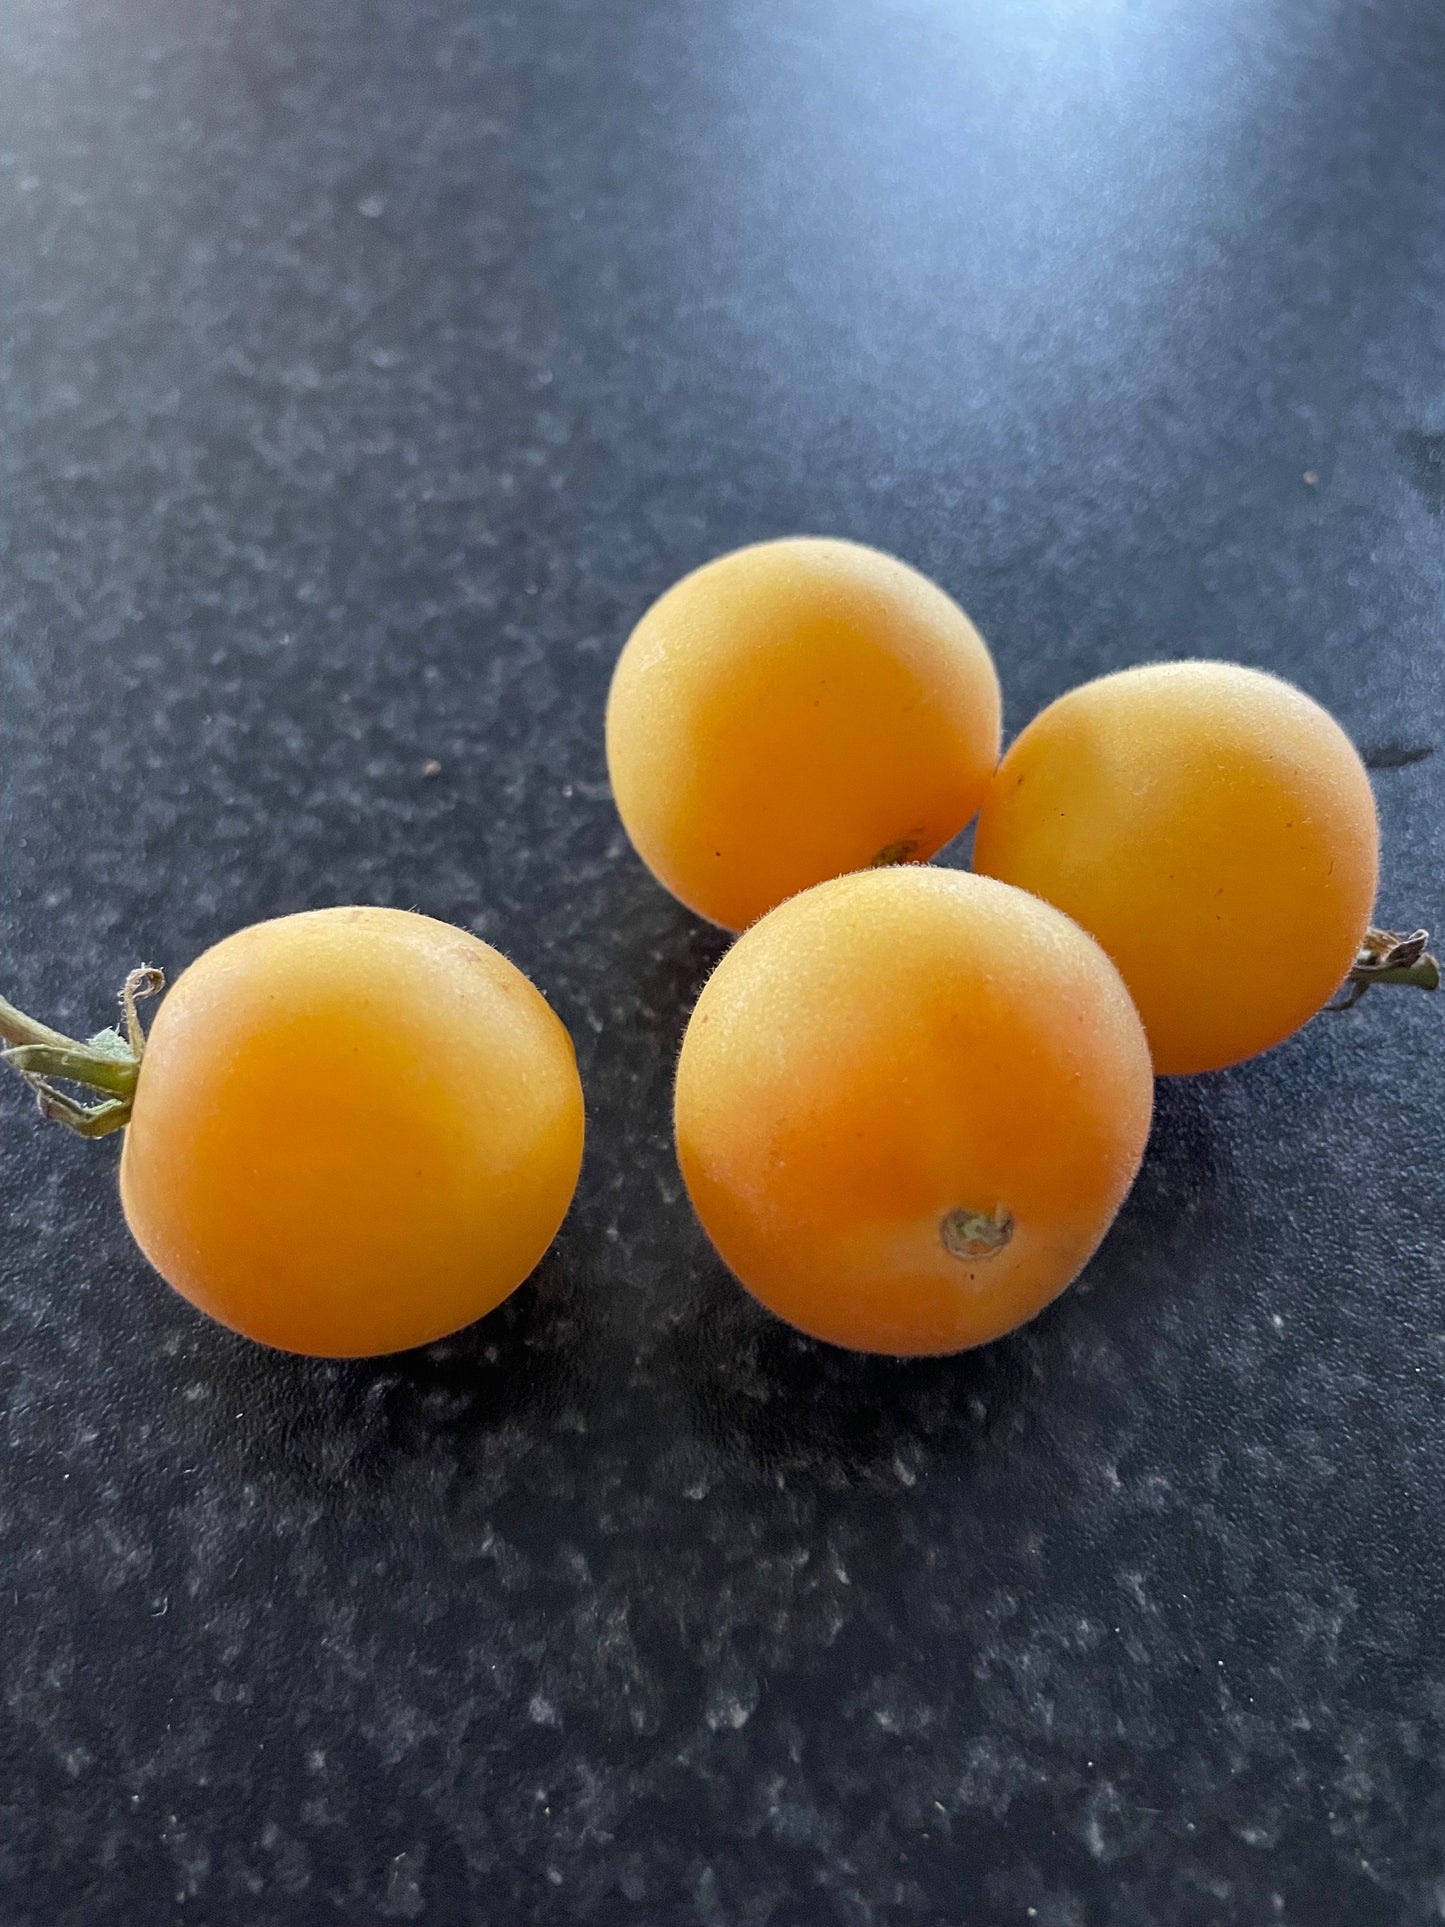 Garden Peach - Tomato Seeds - Heirloom Tomato - 25+ Seeds